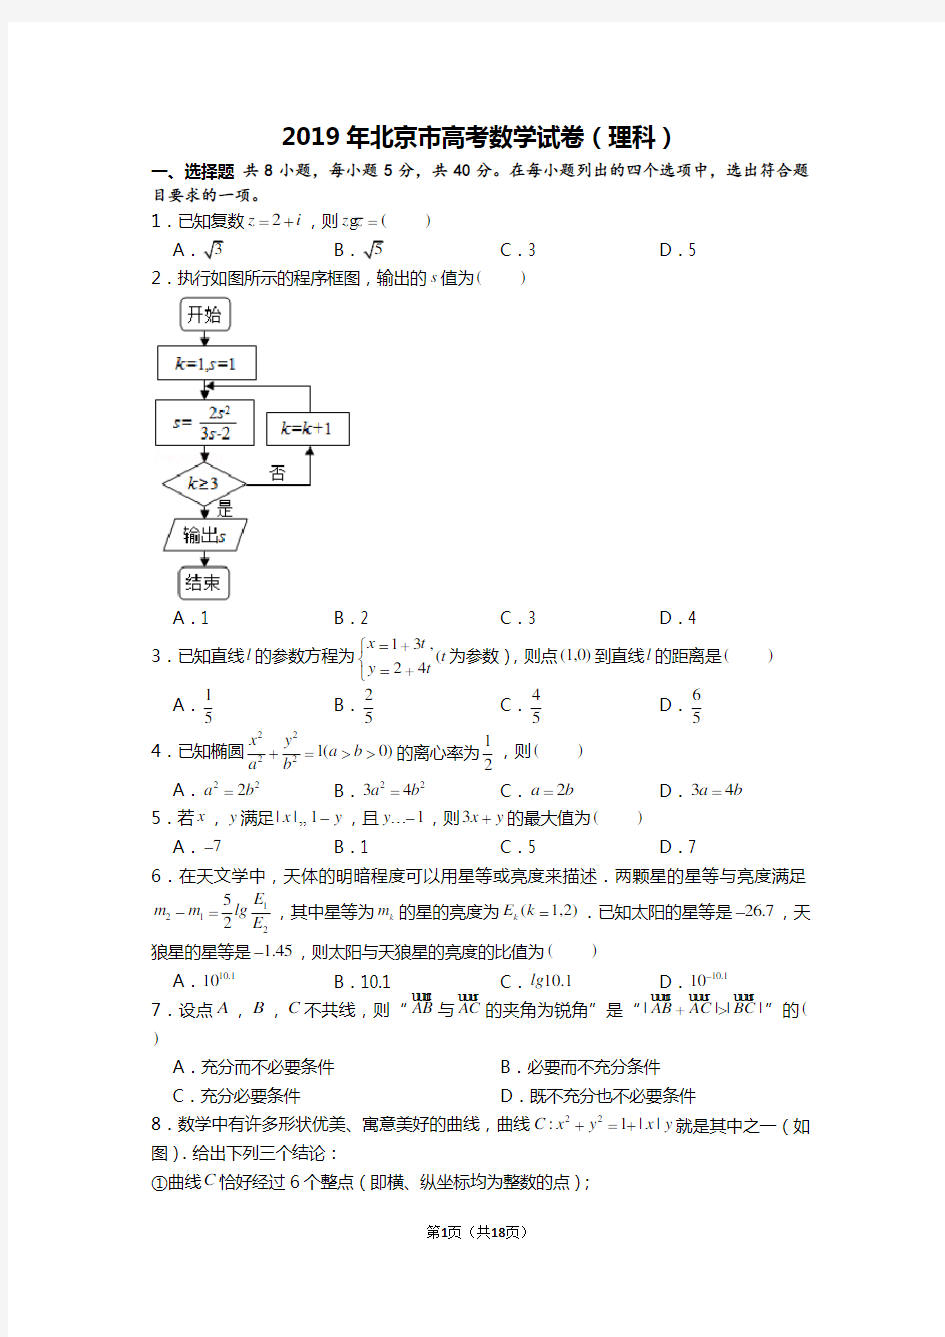 (完整版)2019年北京市高考数学试卷(理科)含答案